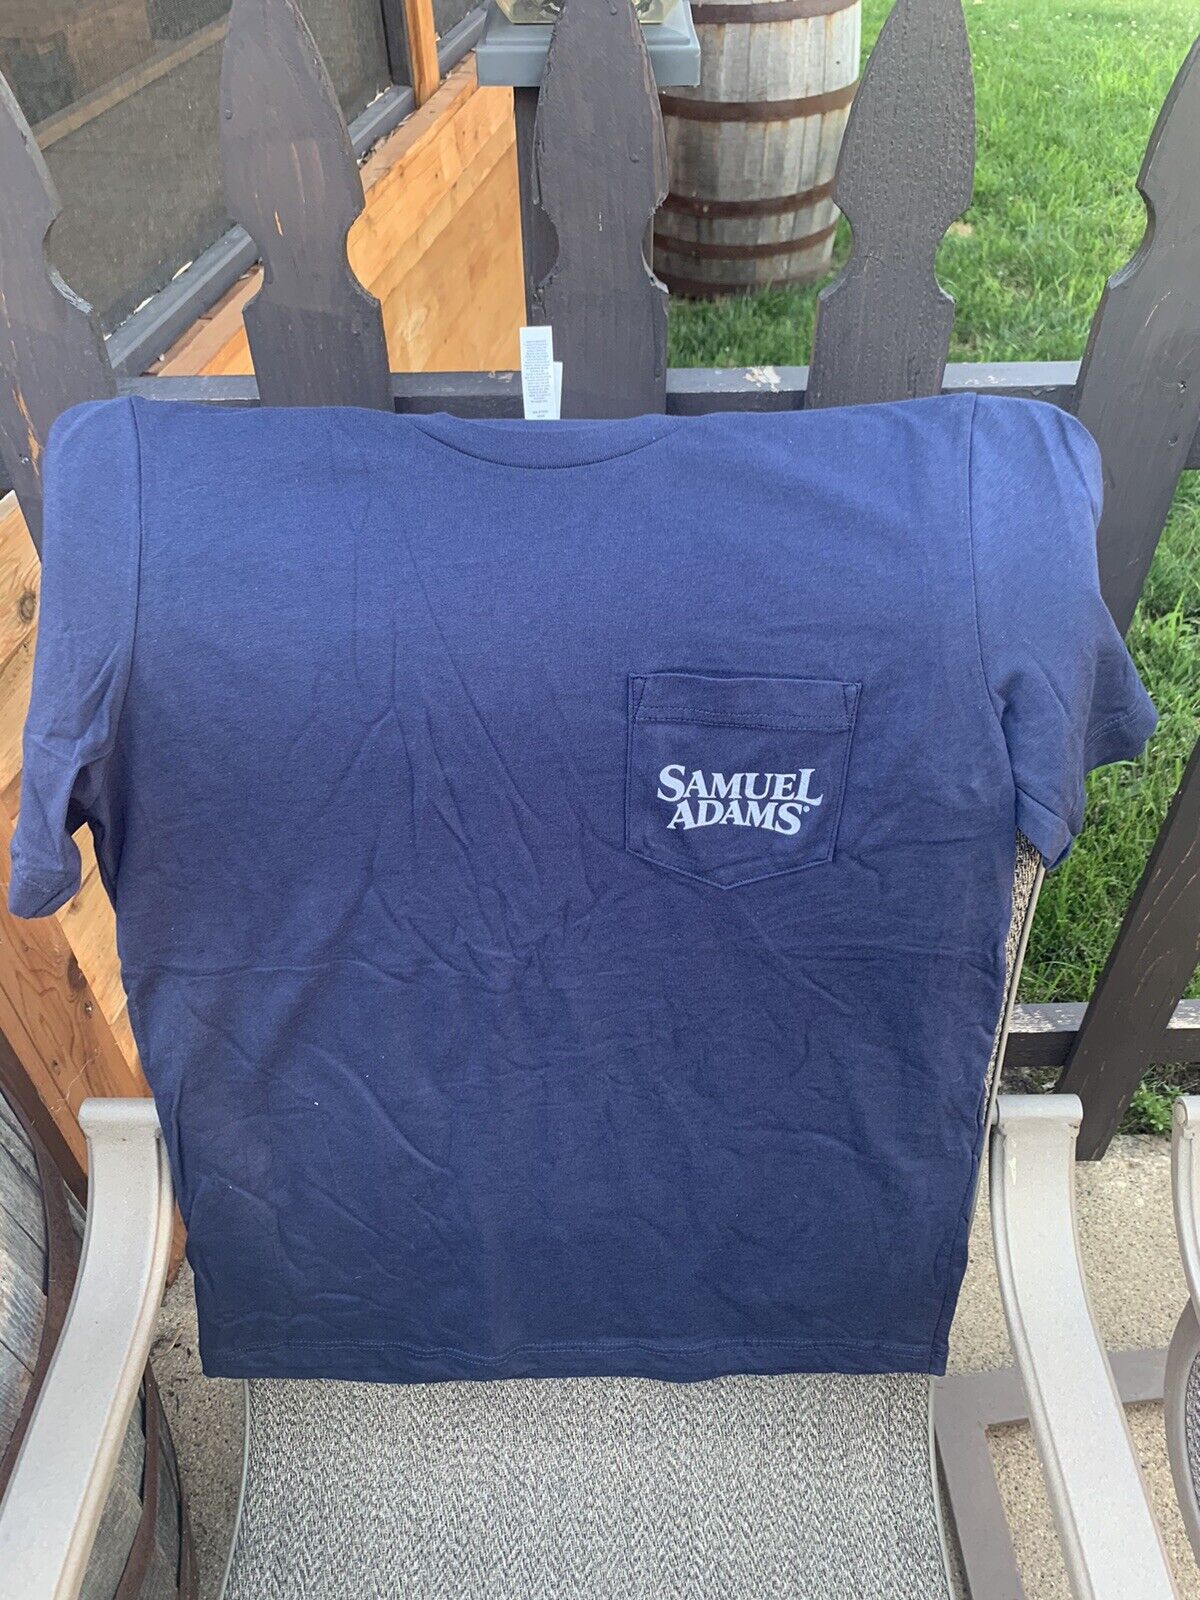 2 FOR 1 BRAND NEW Samuel Sam Adams Boston Beer Company Pocket T-Shirt - Medium